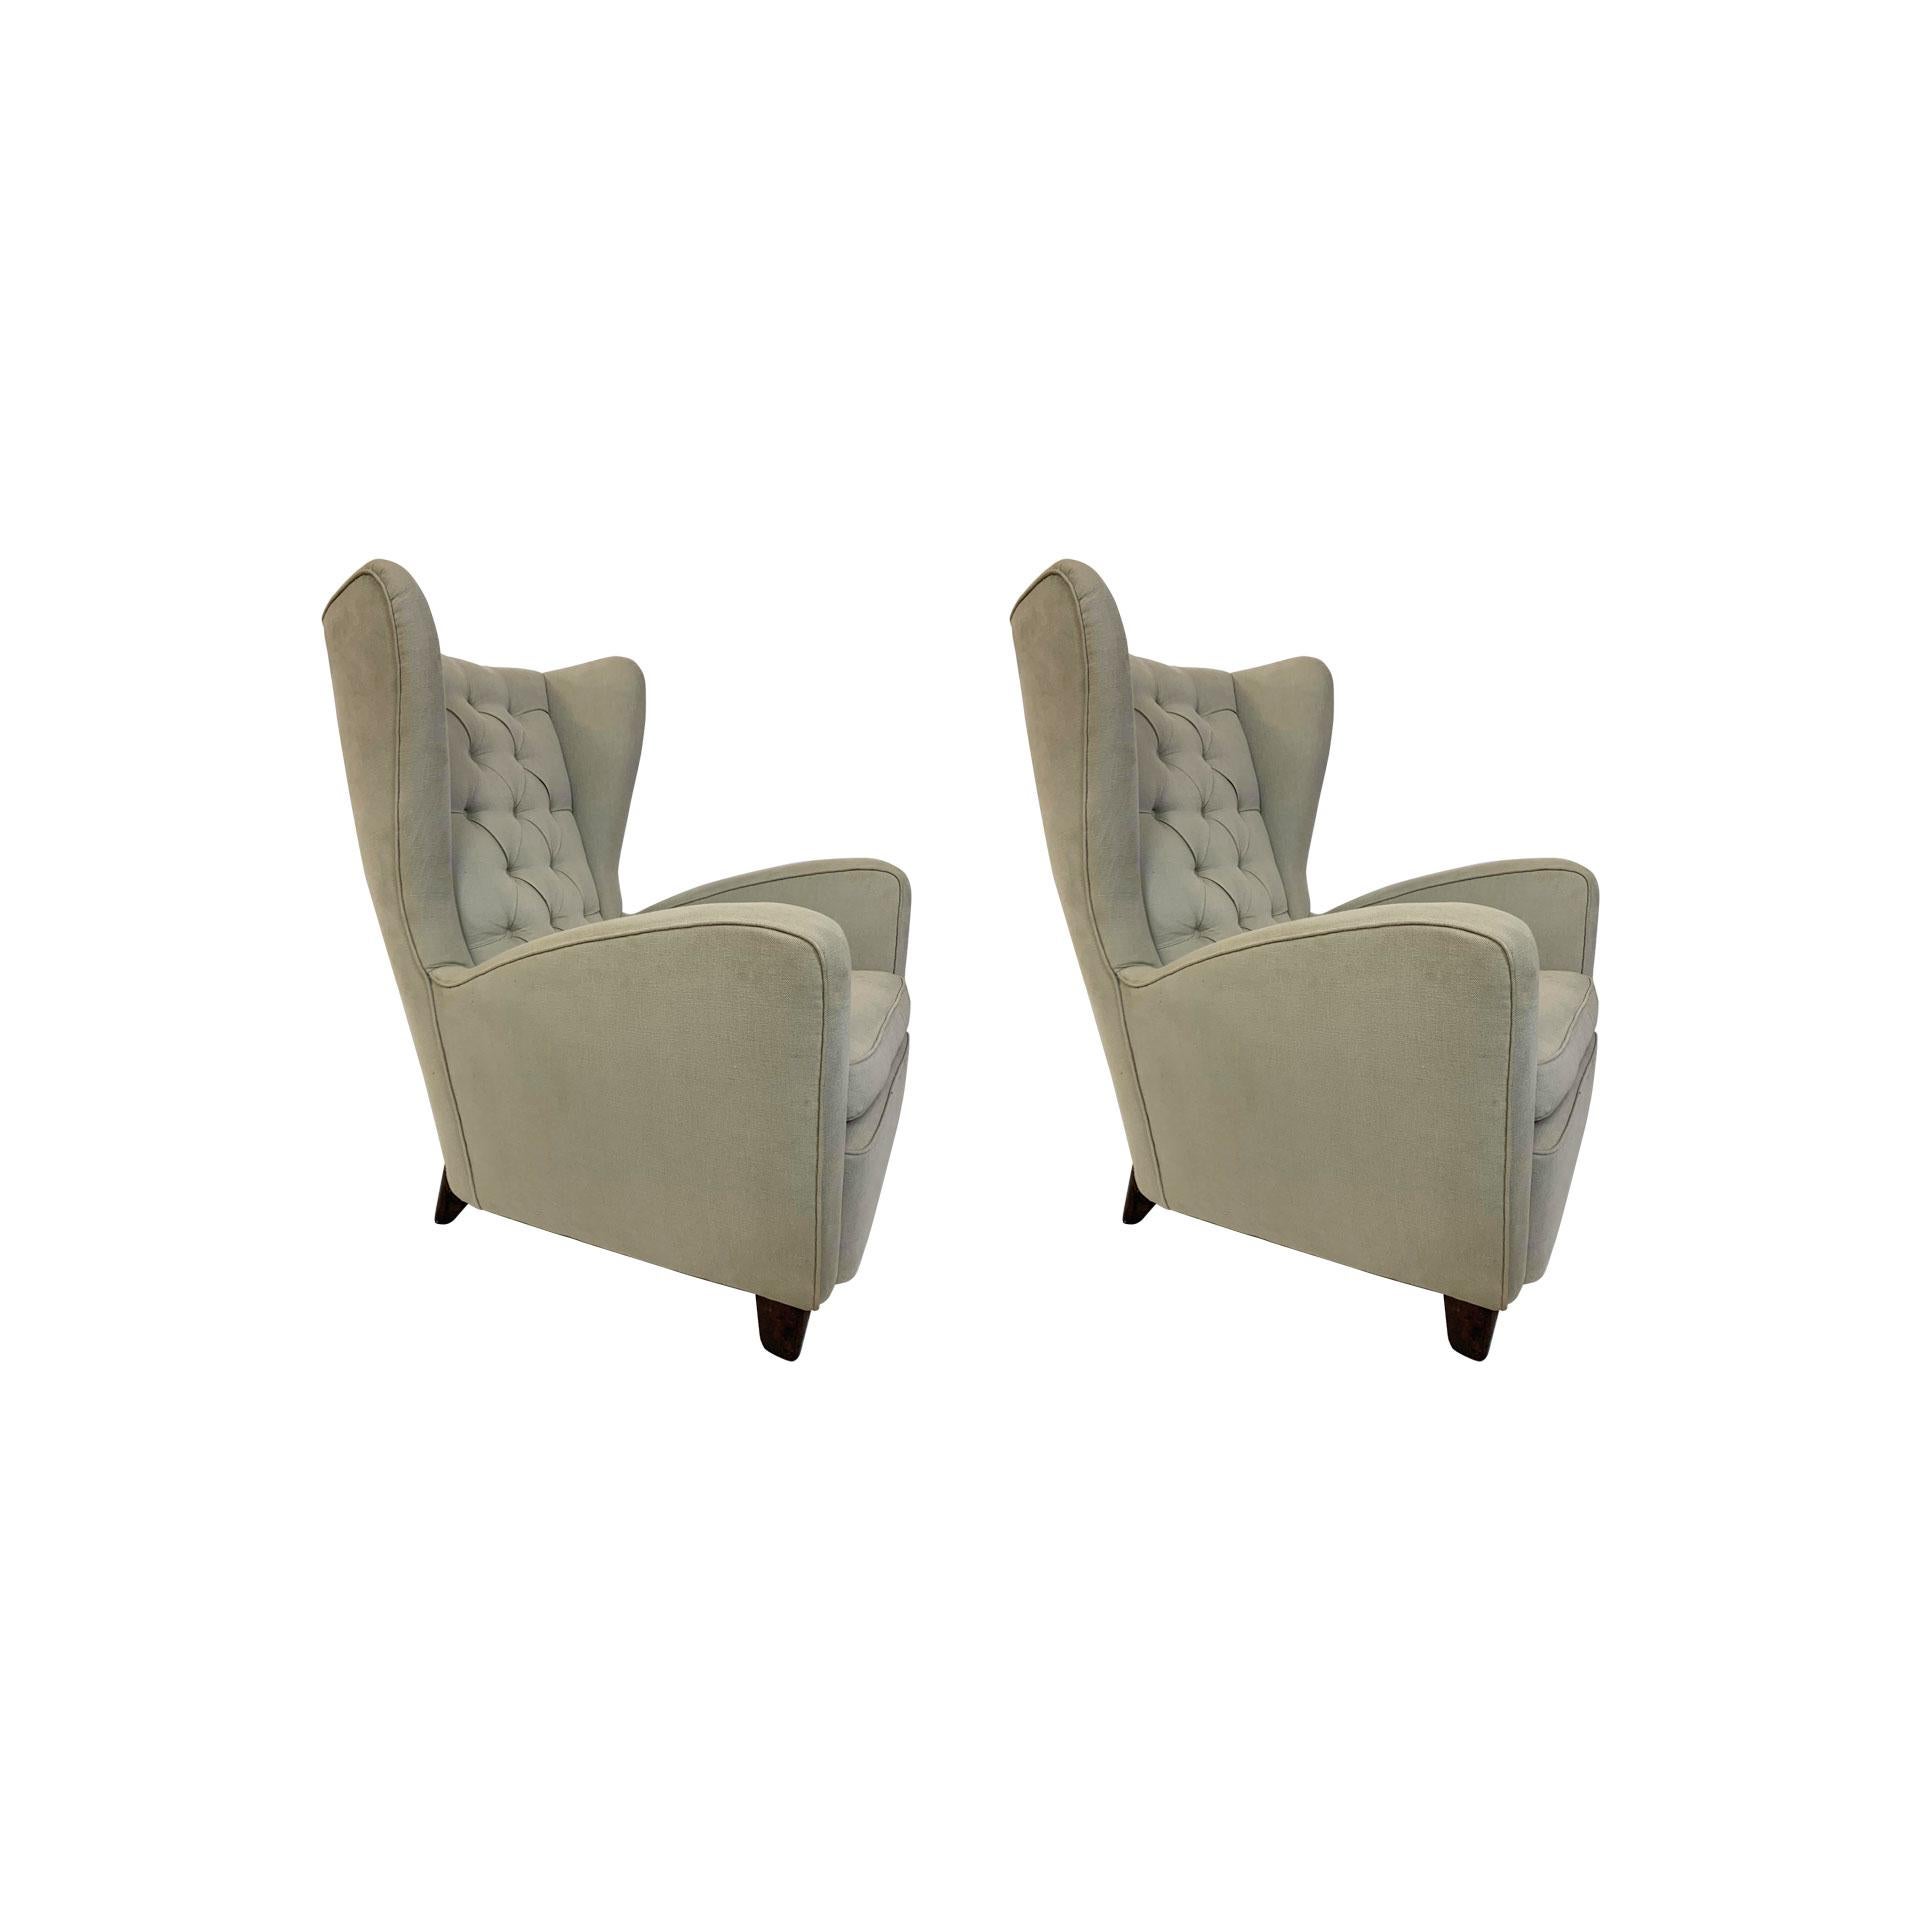 Paar sehr schöne Sessel bergère entworfen von Ico Parisi in den 1950er Jahren für Ariberto Colombo, Cantù. Die beiden Sessel sind in sehr gutem Zustand.
Veröffentlicht in: Lietti F., 